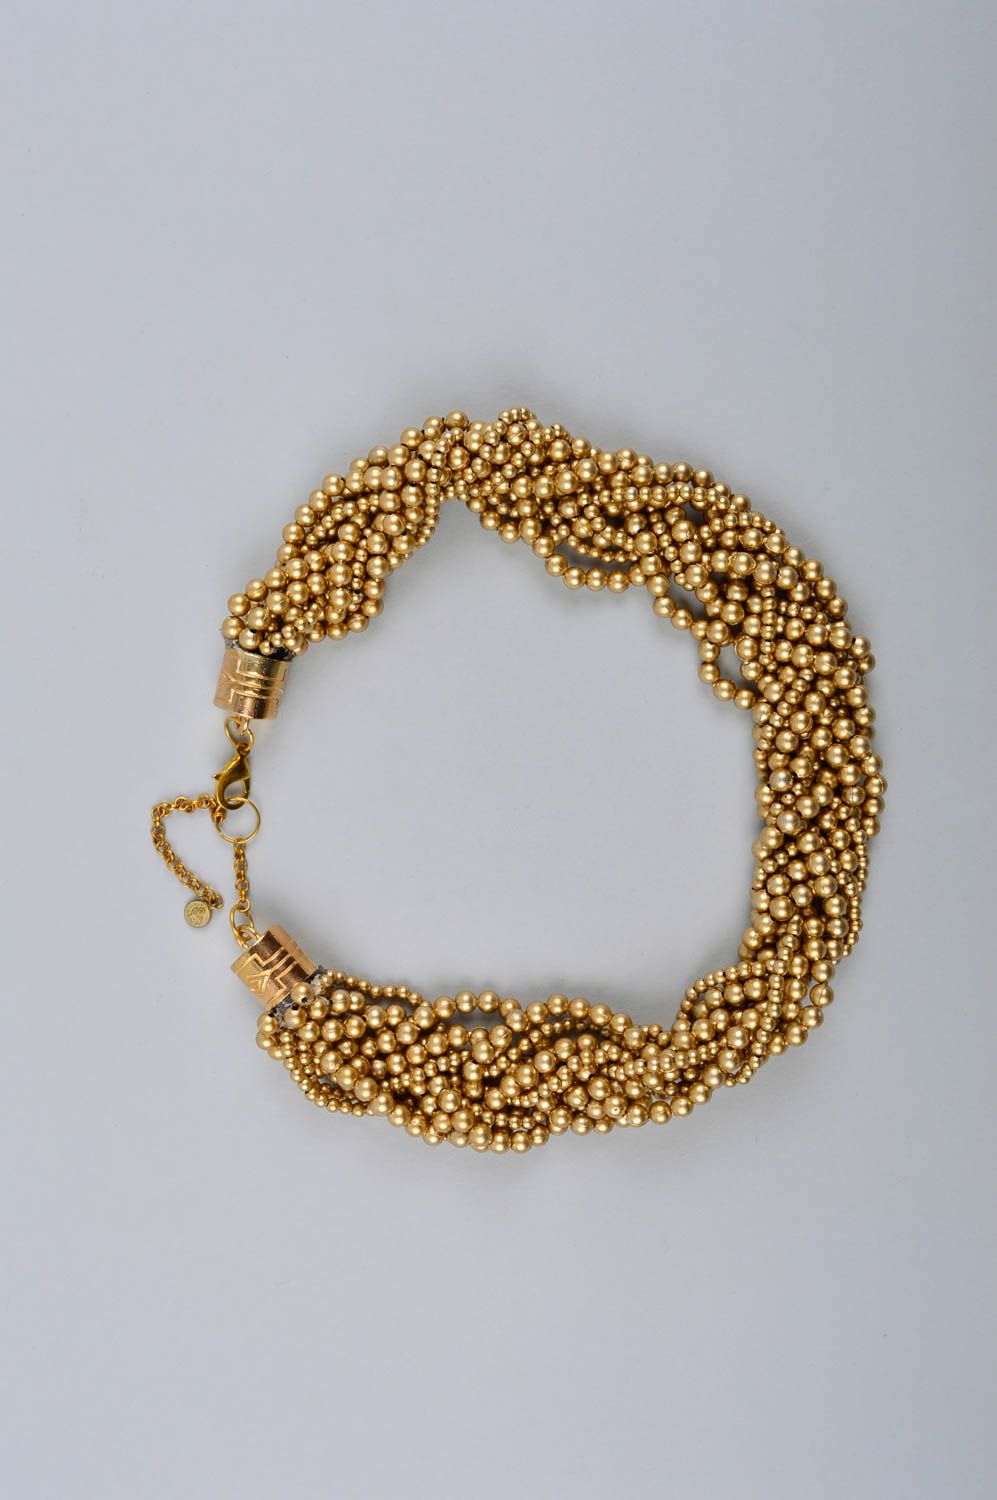 Ожерелье из бисера украшение ручной работы колье из бусин золотистого оттенка фото 2